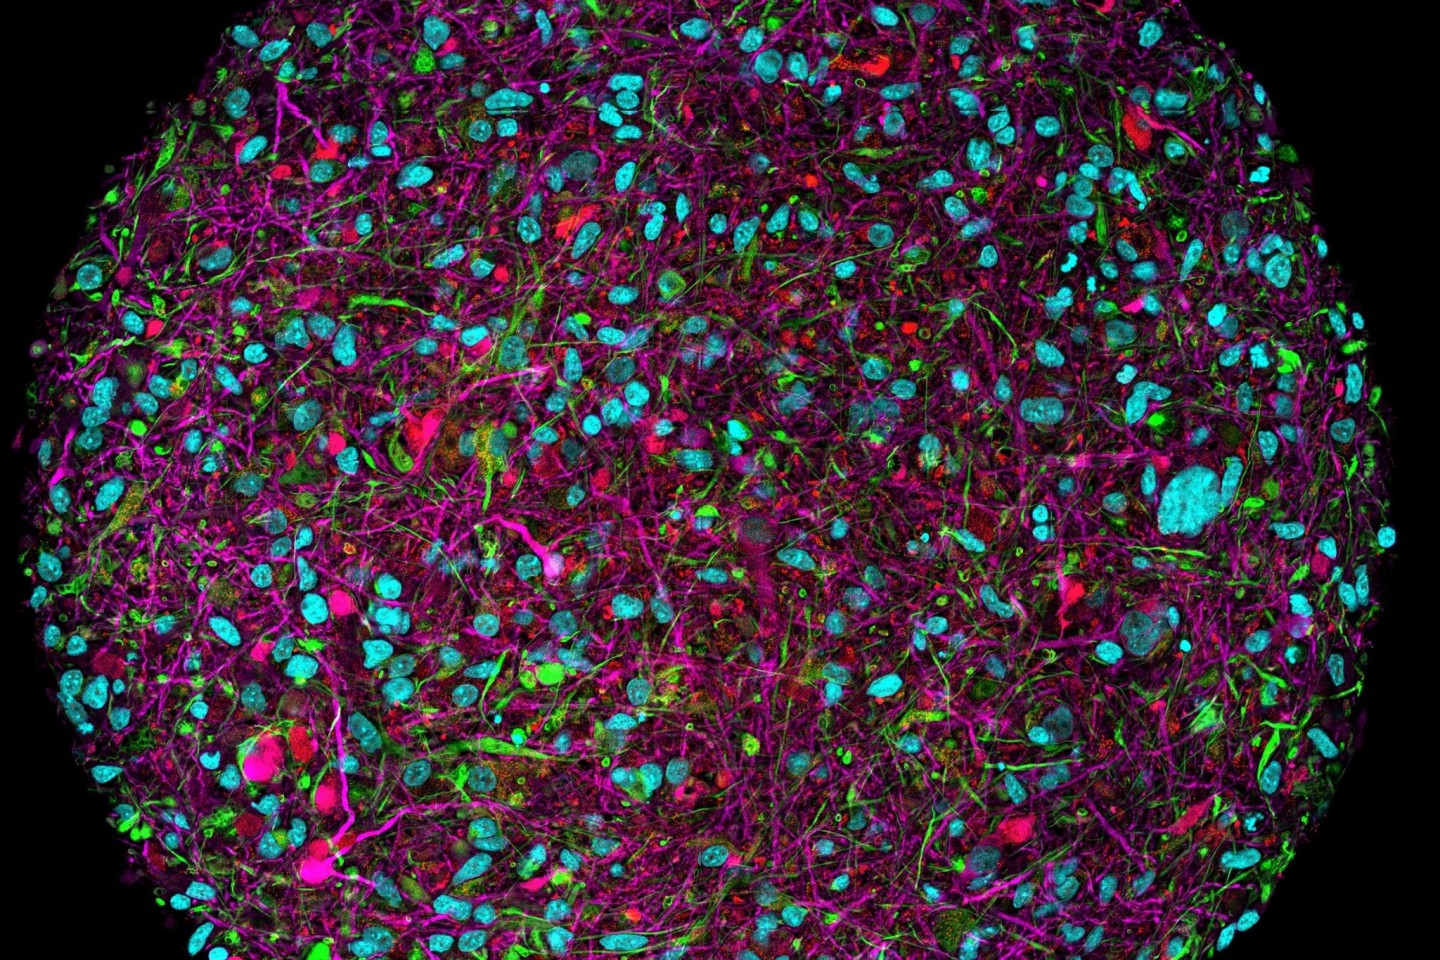 Vergrößertes Bild eines im Labor gezüchteten Hirnorganoids mit Fluoreszenzmarkierung für verschiedene Zelltypen.